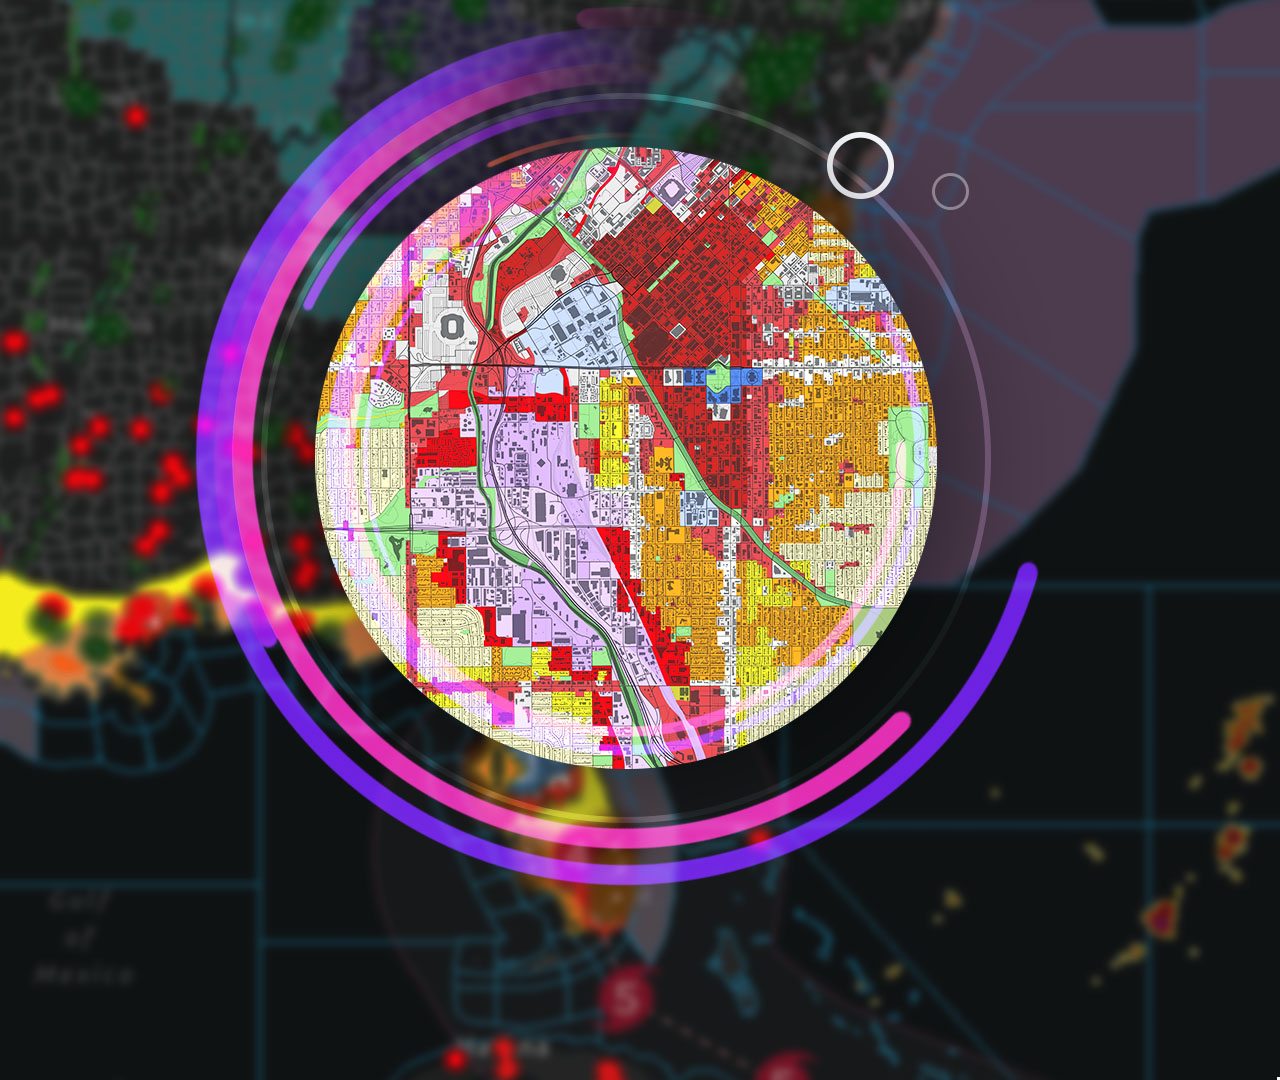 Immagine di un computer che visualizza una mappa di dati spaziali, circondata da immagini di alti edifici cittadini